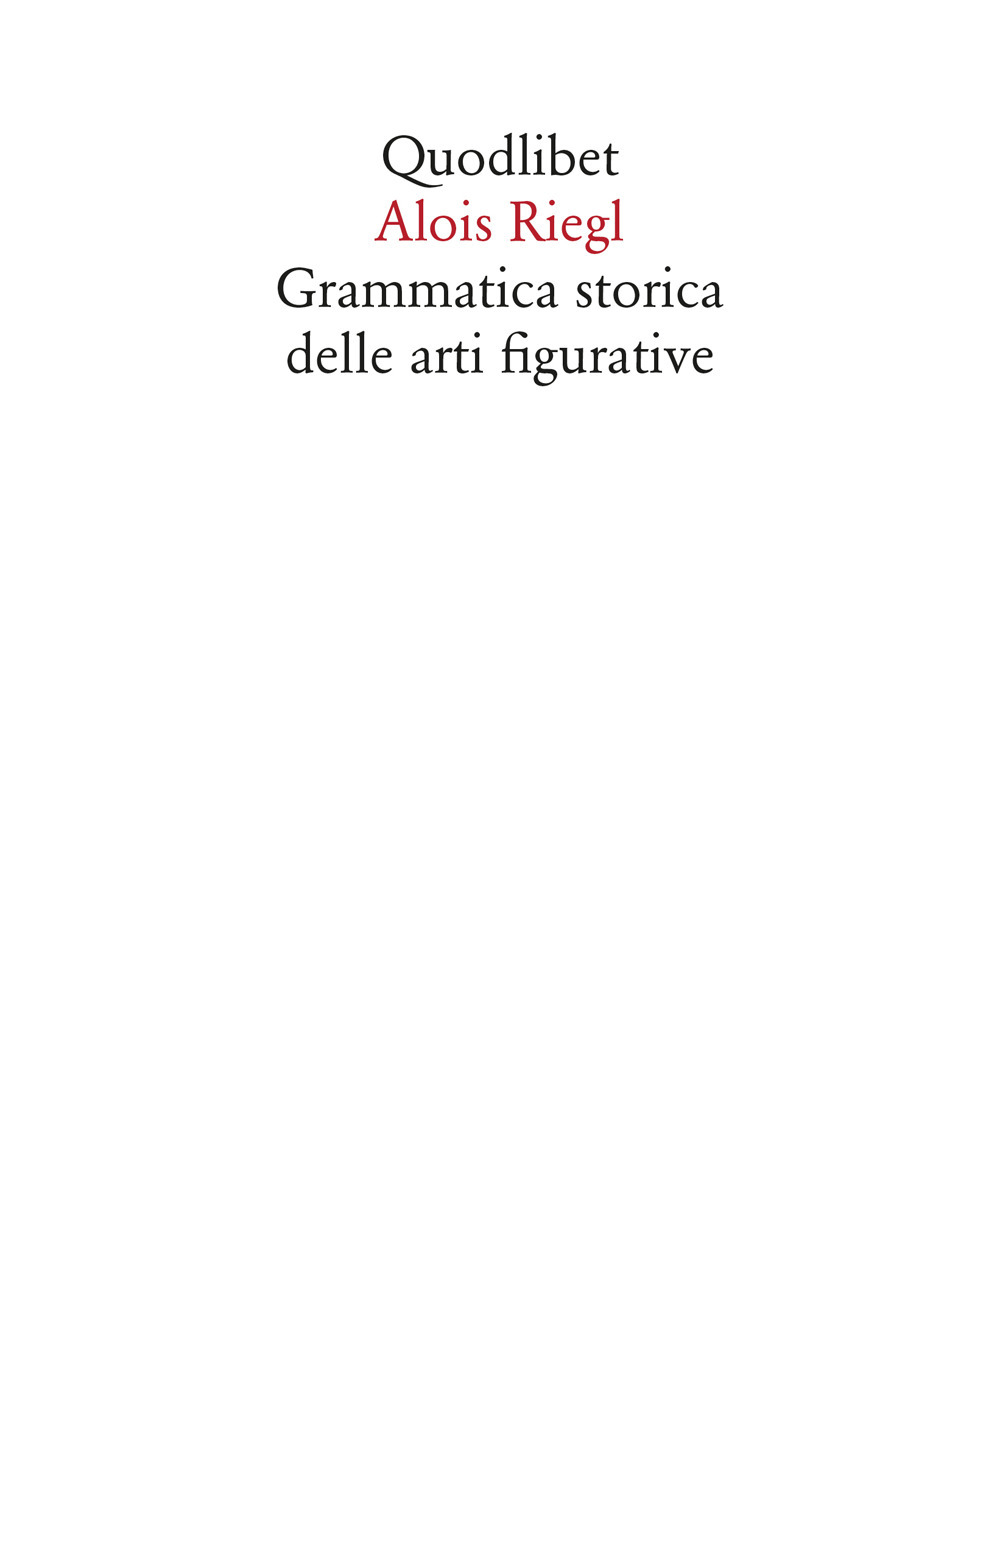 Image of Grammatica storica delle arti figurative